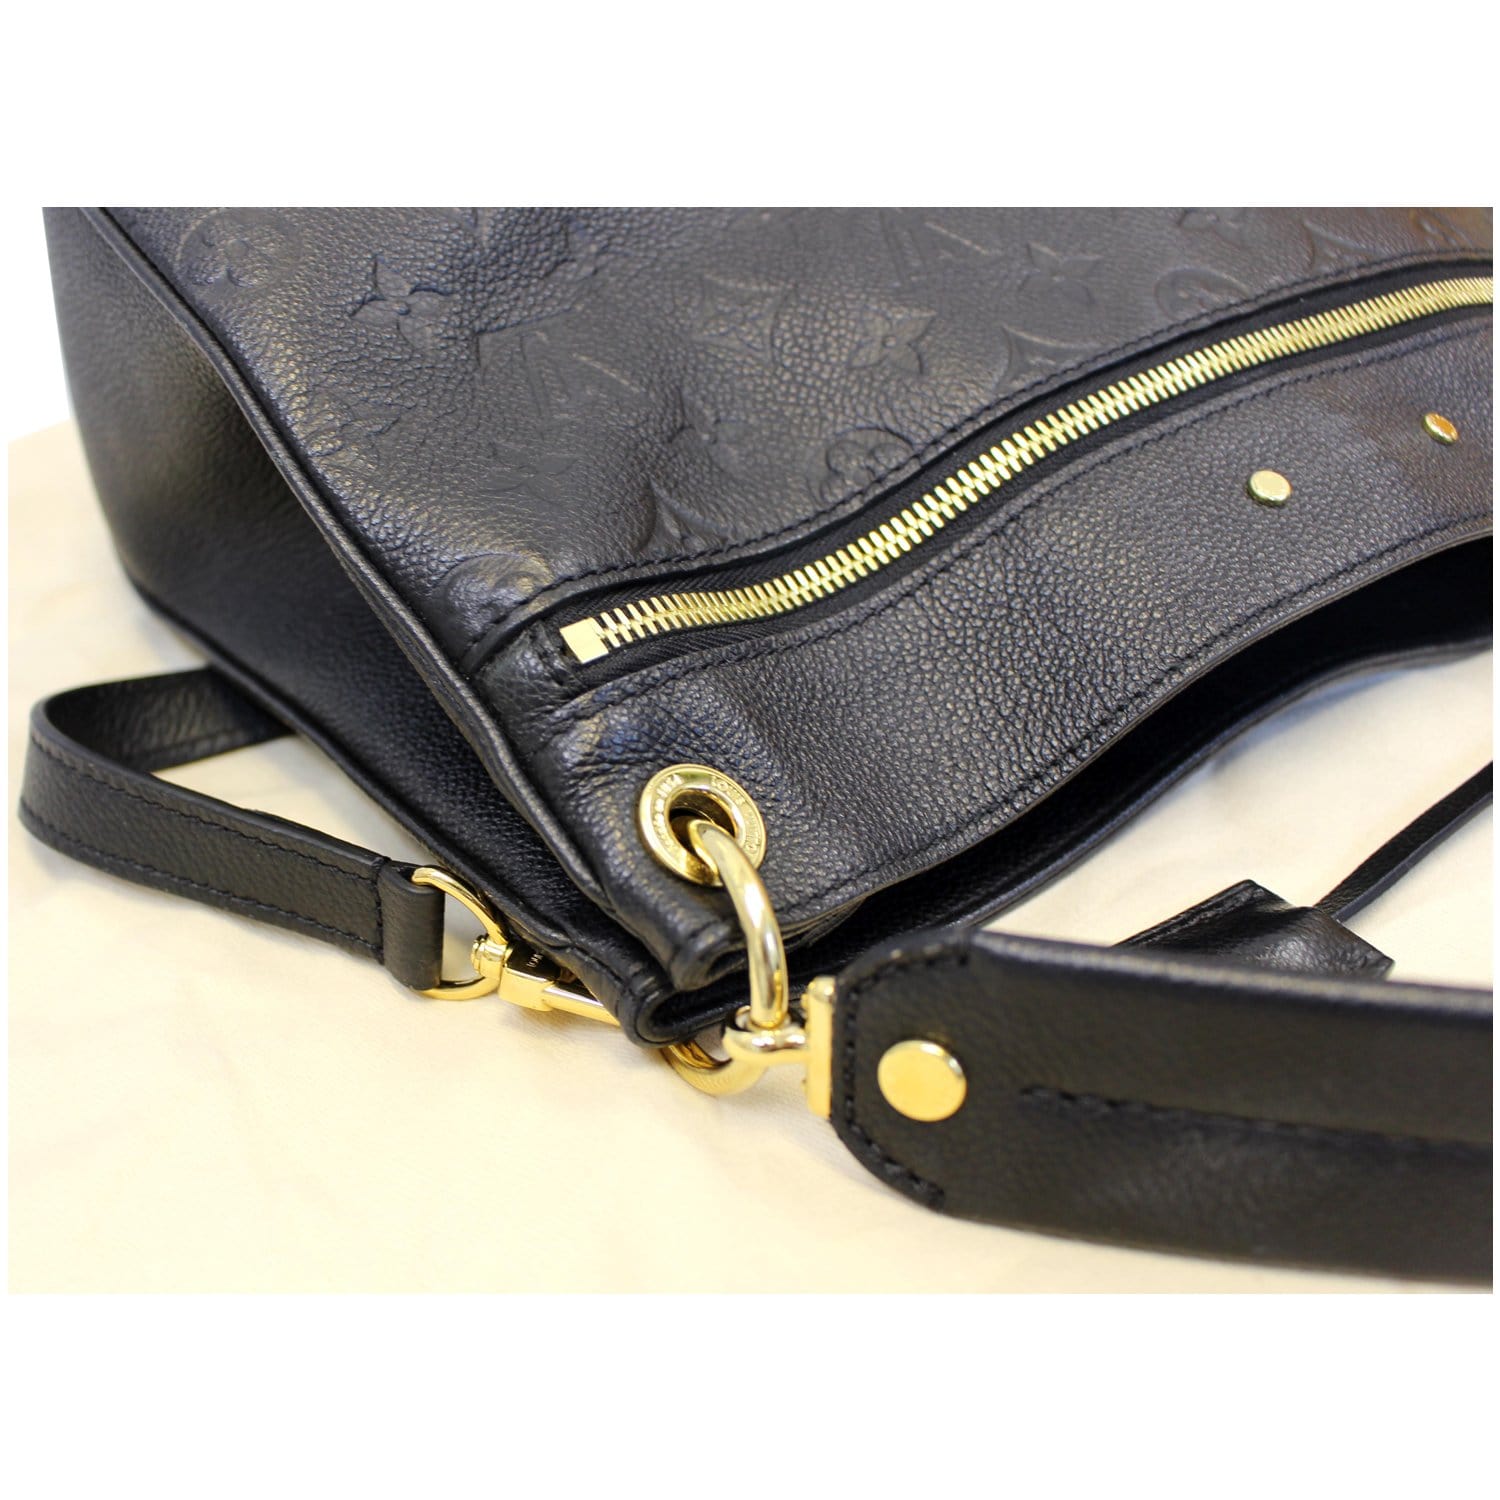 Louis Vuitton Model: Spontini NM Handbag Monogram Empreinte